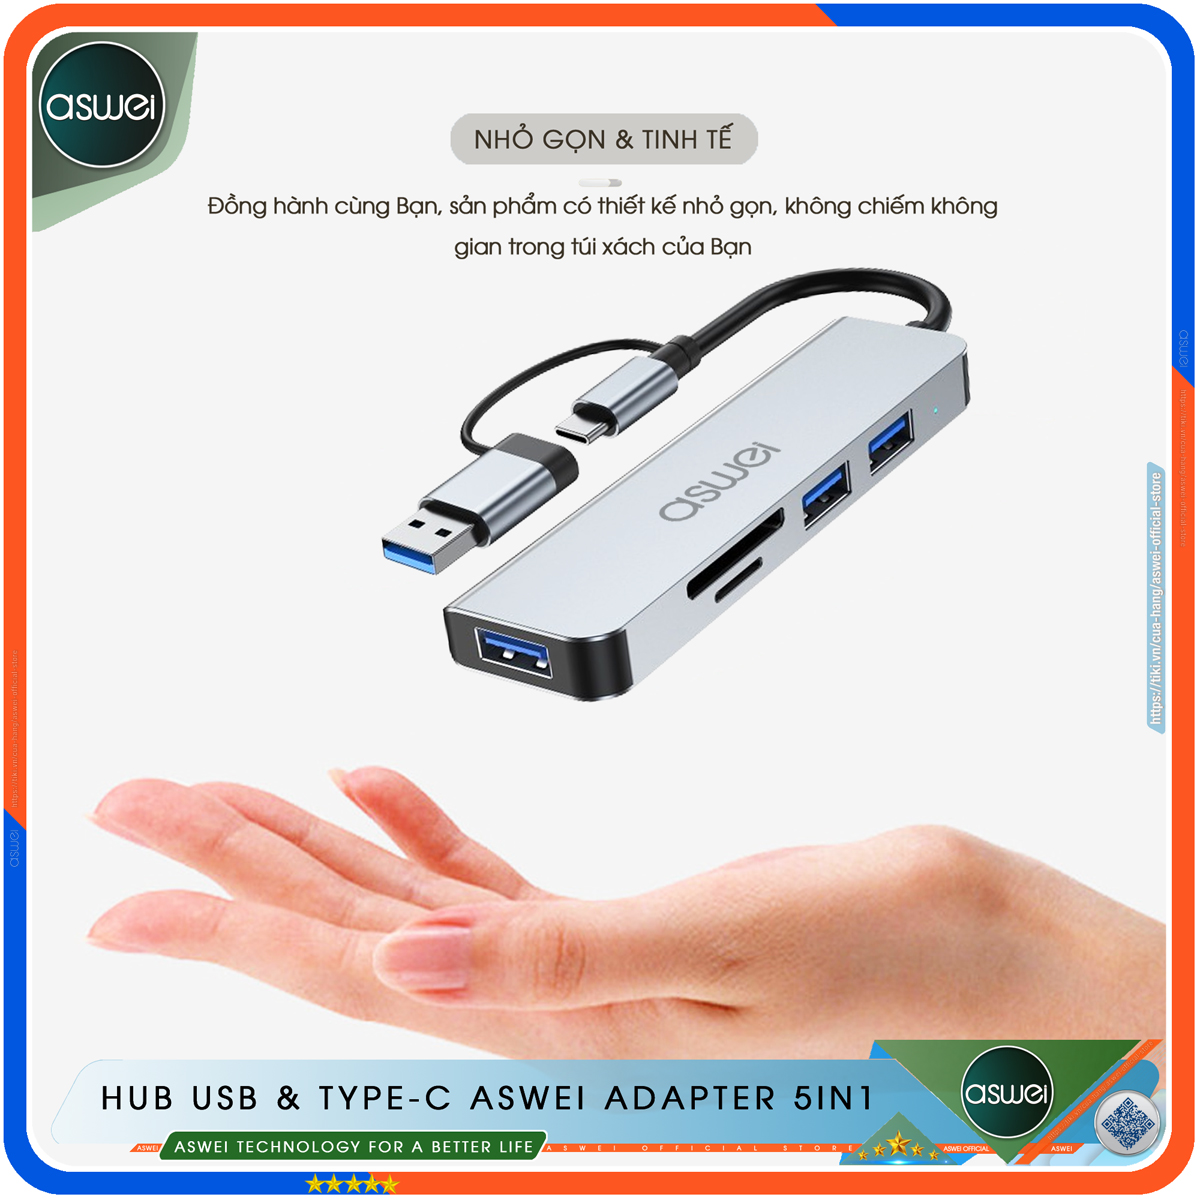 Hub USB 3.0 ASWEI 5 in 1 - Bộ Chia USB Tốc Độ Cao 5 Trong 1 To USB 3.0, Đầu Đọc Thẻ SD TF - Hub Chuyển Đổi USB Type-C Dành Cho Macbook, Laptop, PC, Máy Tính Bảng, Điện Thoại - Hàng Chính Hãng